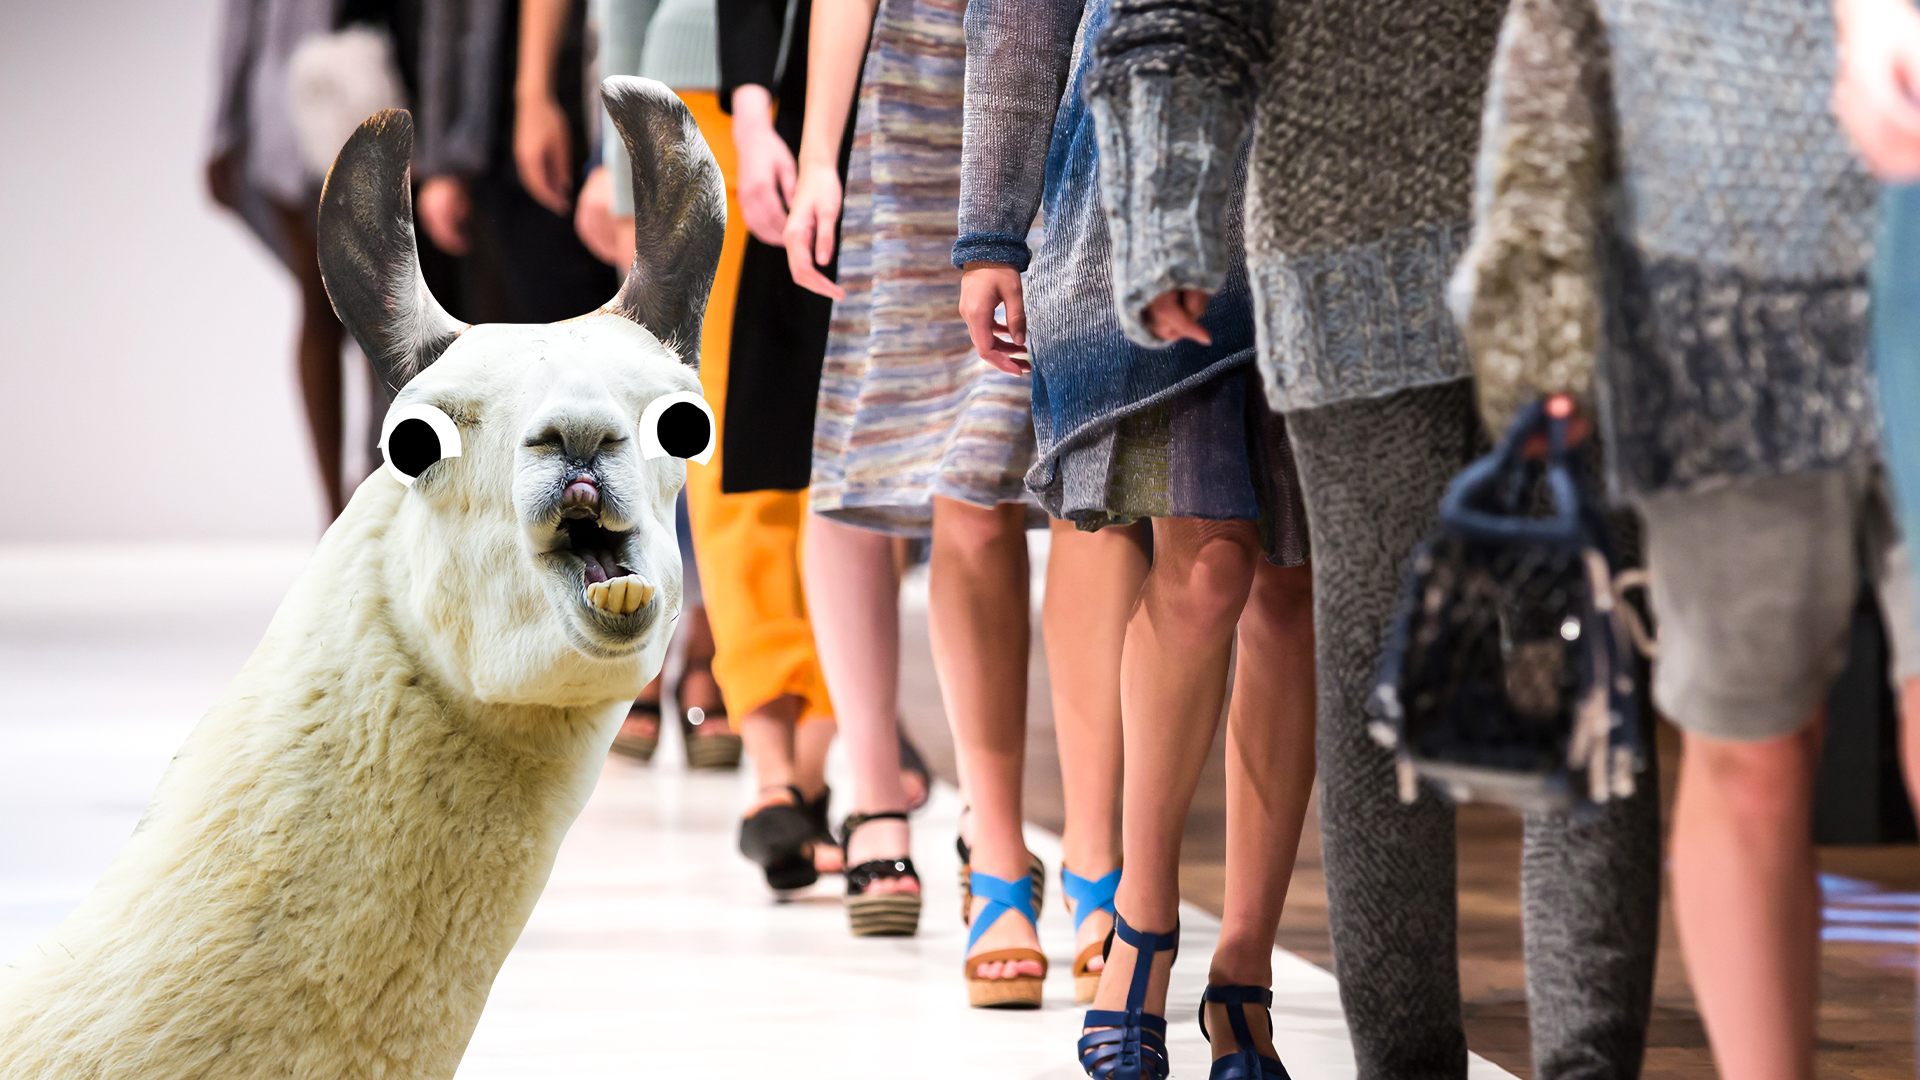 Fashion runway and derpy llama